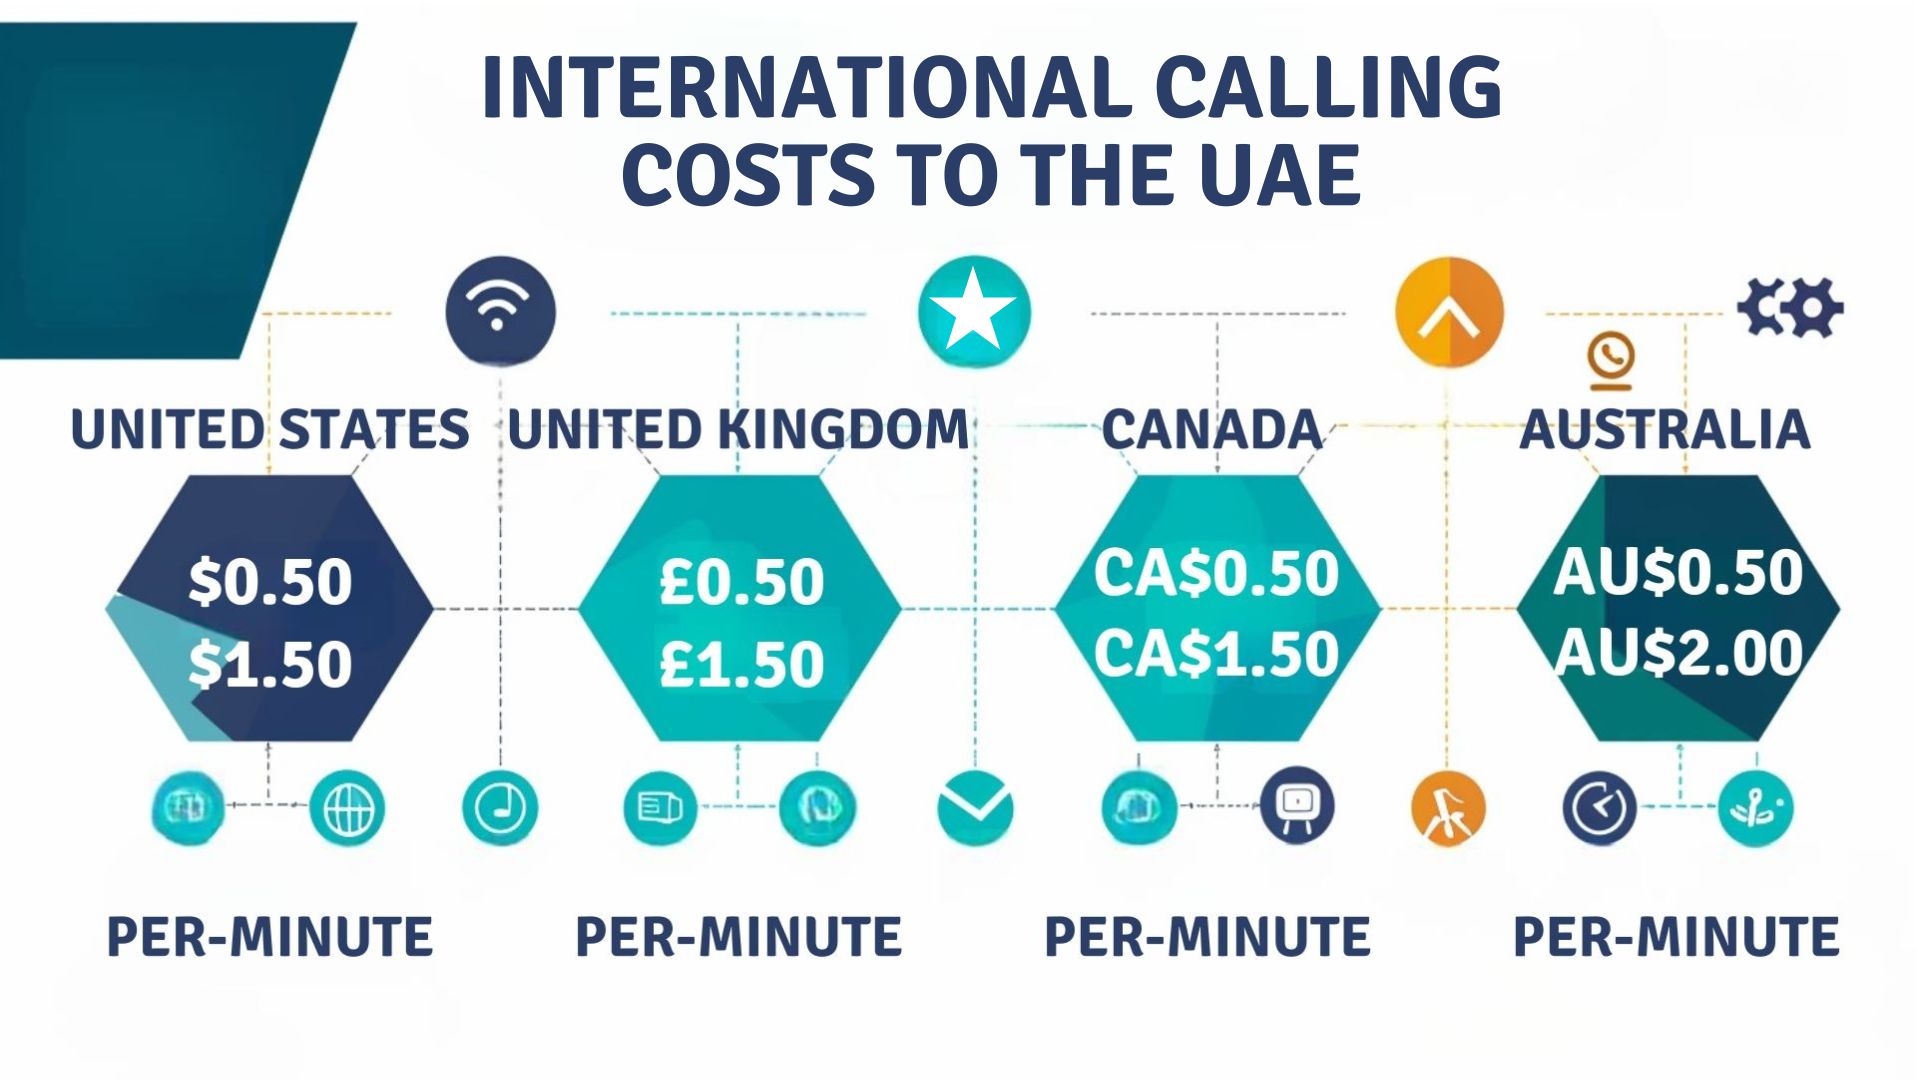 Costi delle chiamate internazionali verso gli Emirati Arabi Uniti